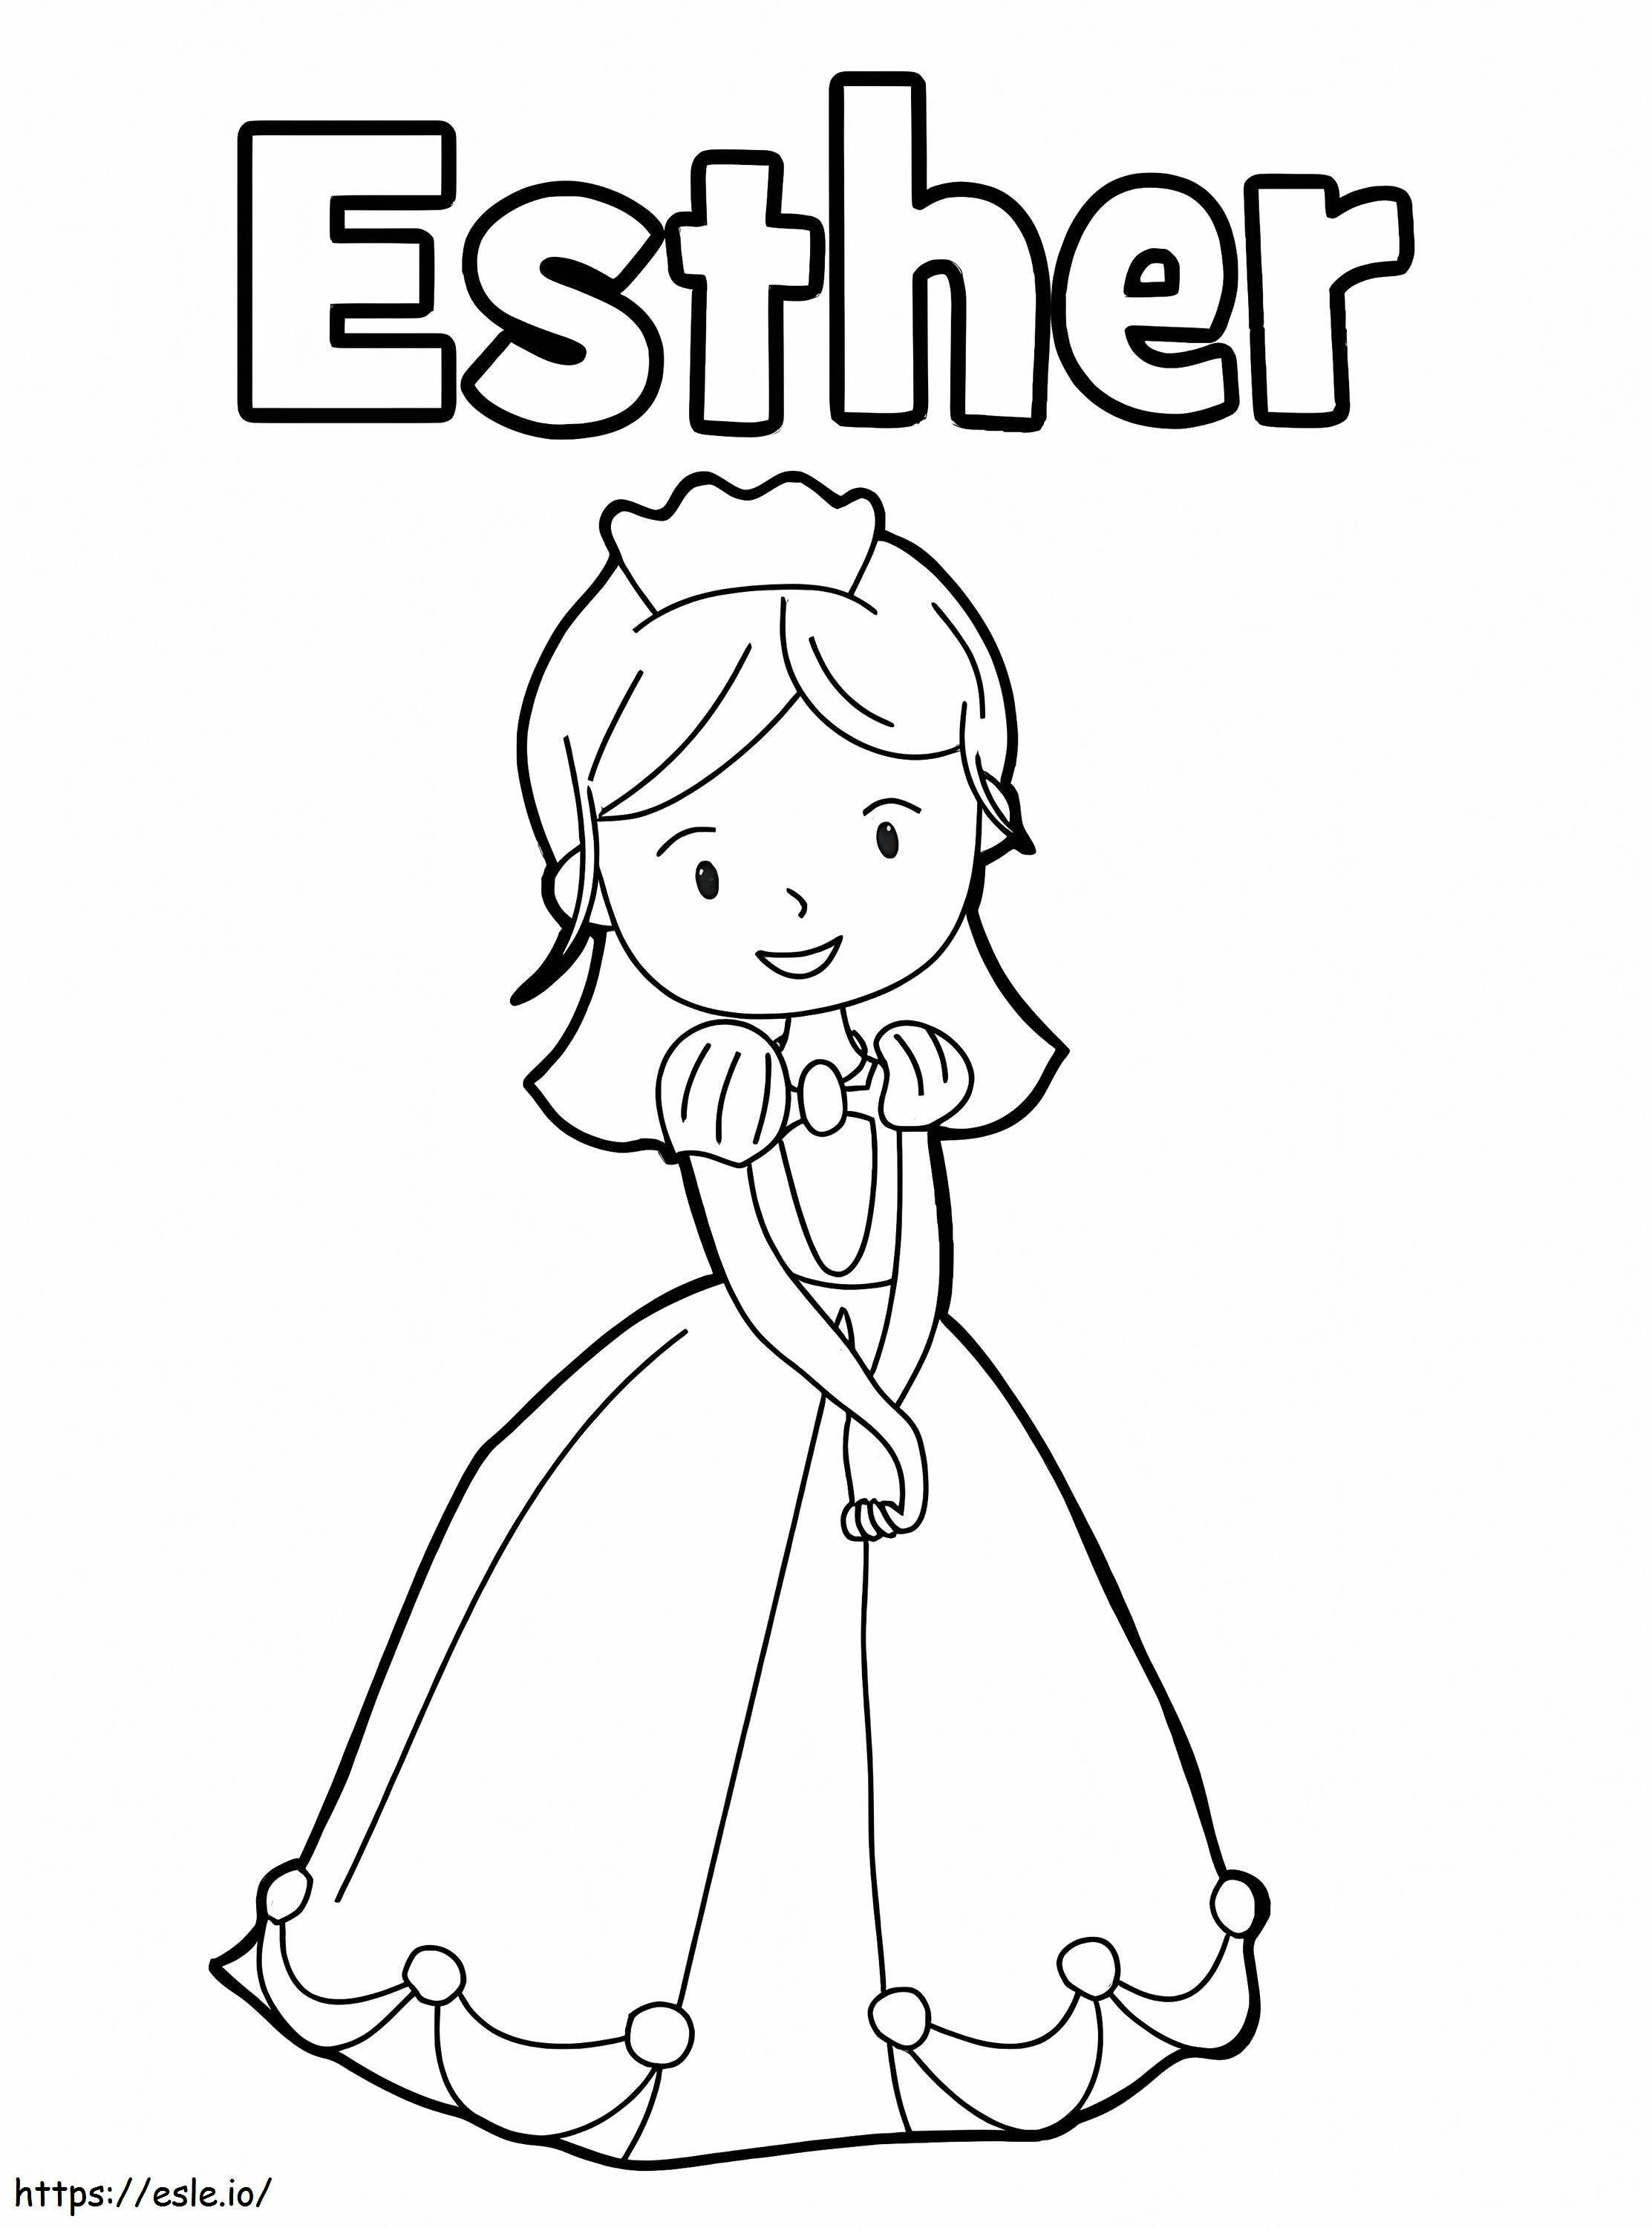 Königin Esther 9 ausmalbilder